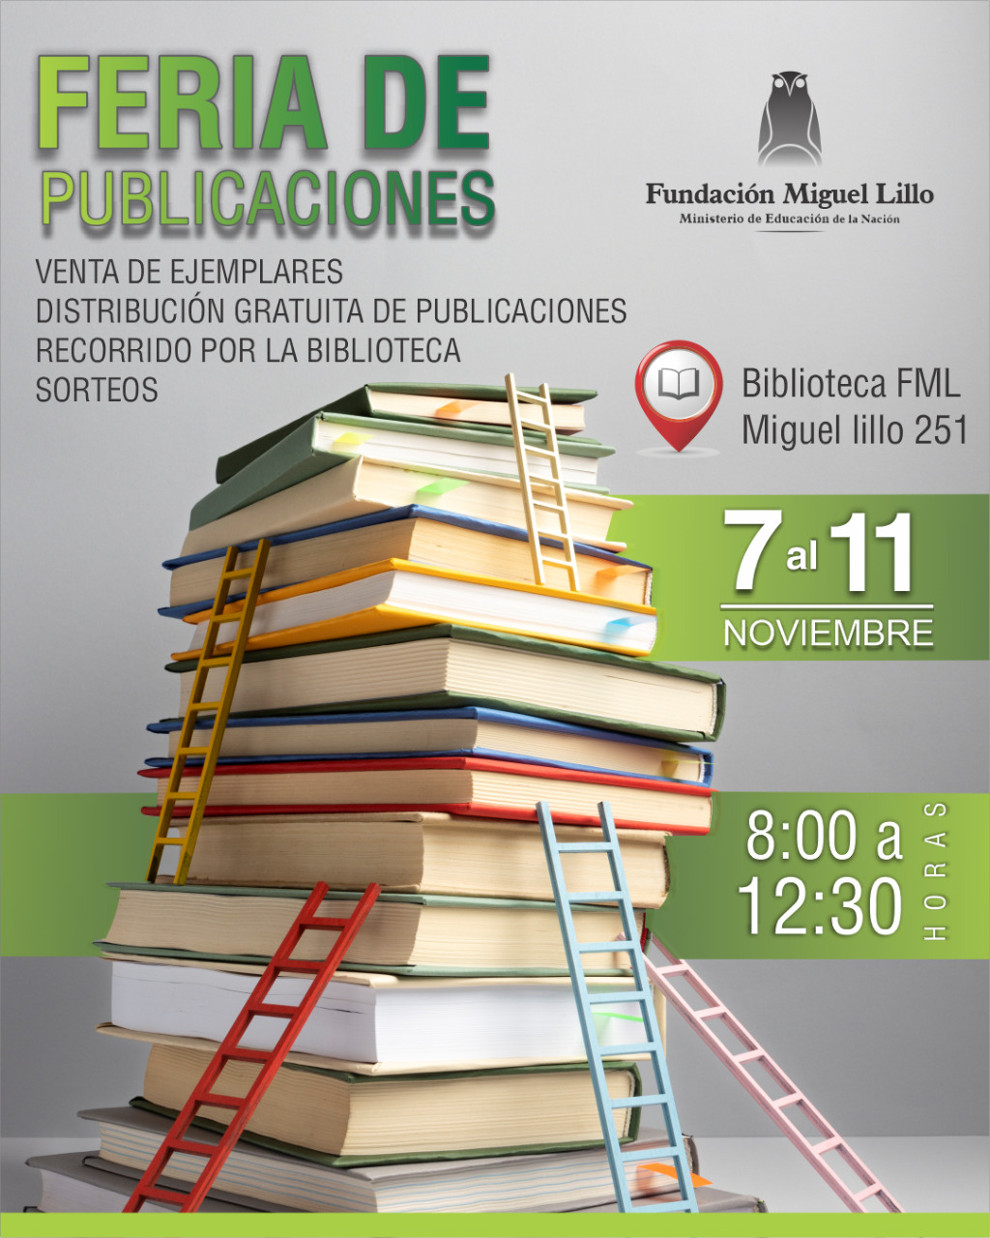 Feria de publicaciones de la Fundación Miguel Lillo.